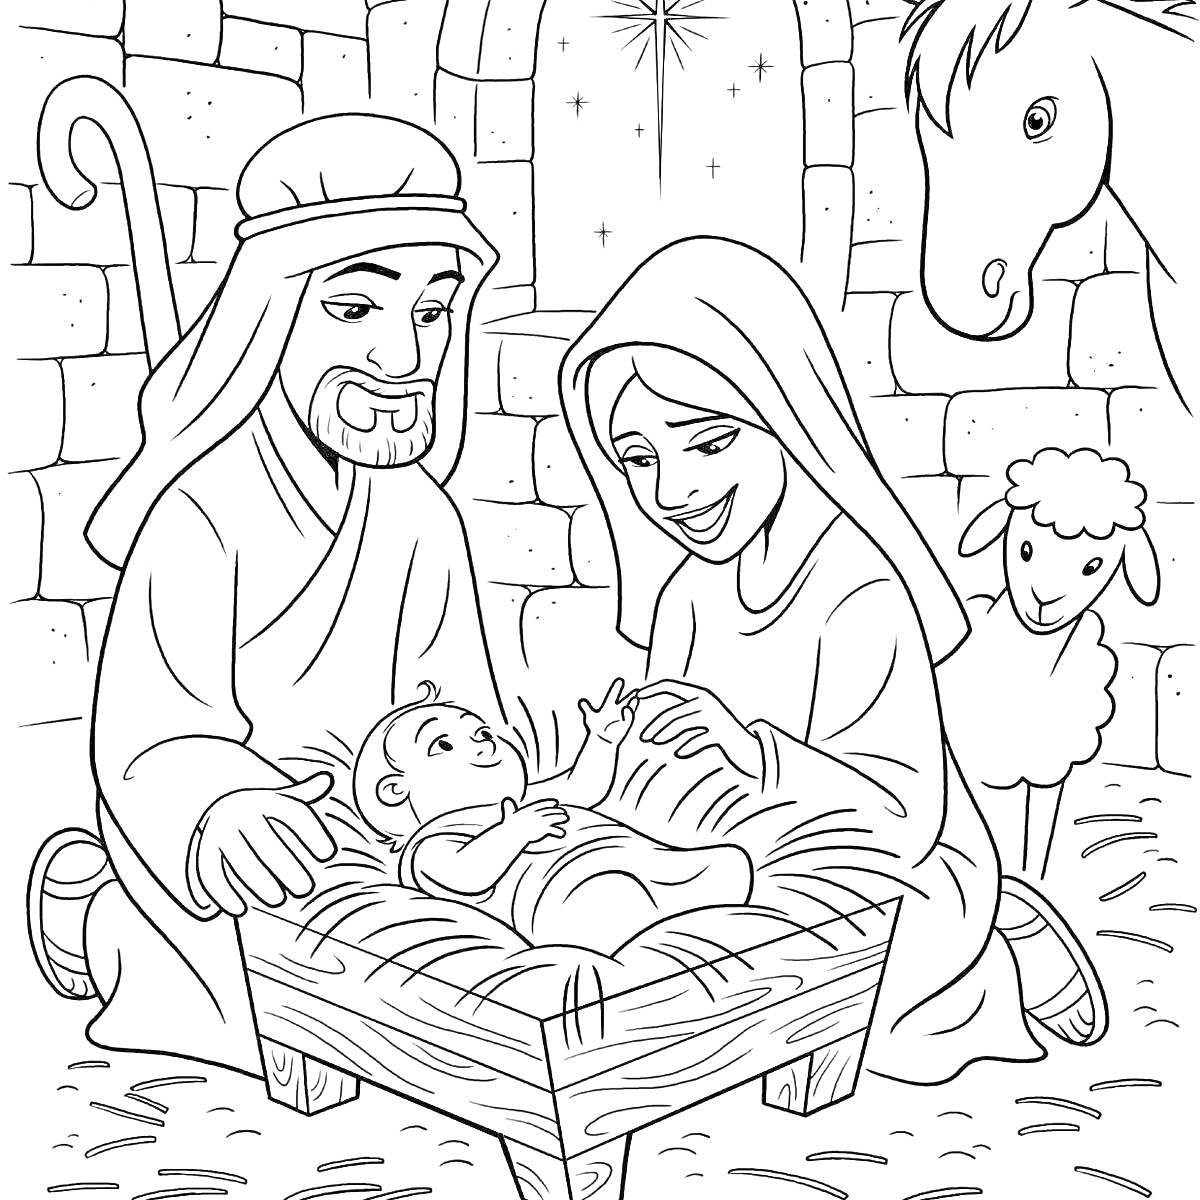 Рождественская сцена с Иосифом, Марией, младенцем Иисусом, ослом и ягненком в хлеву